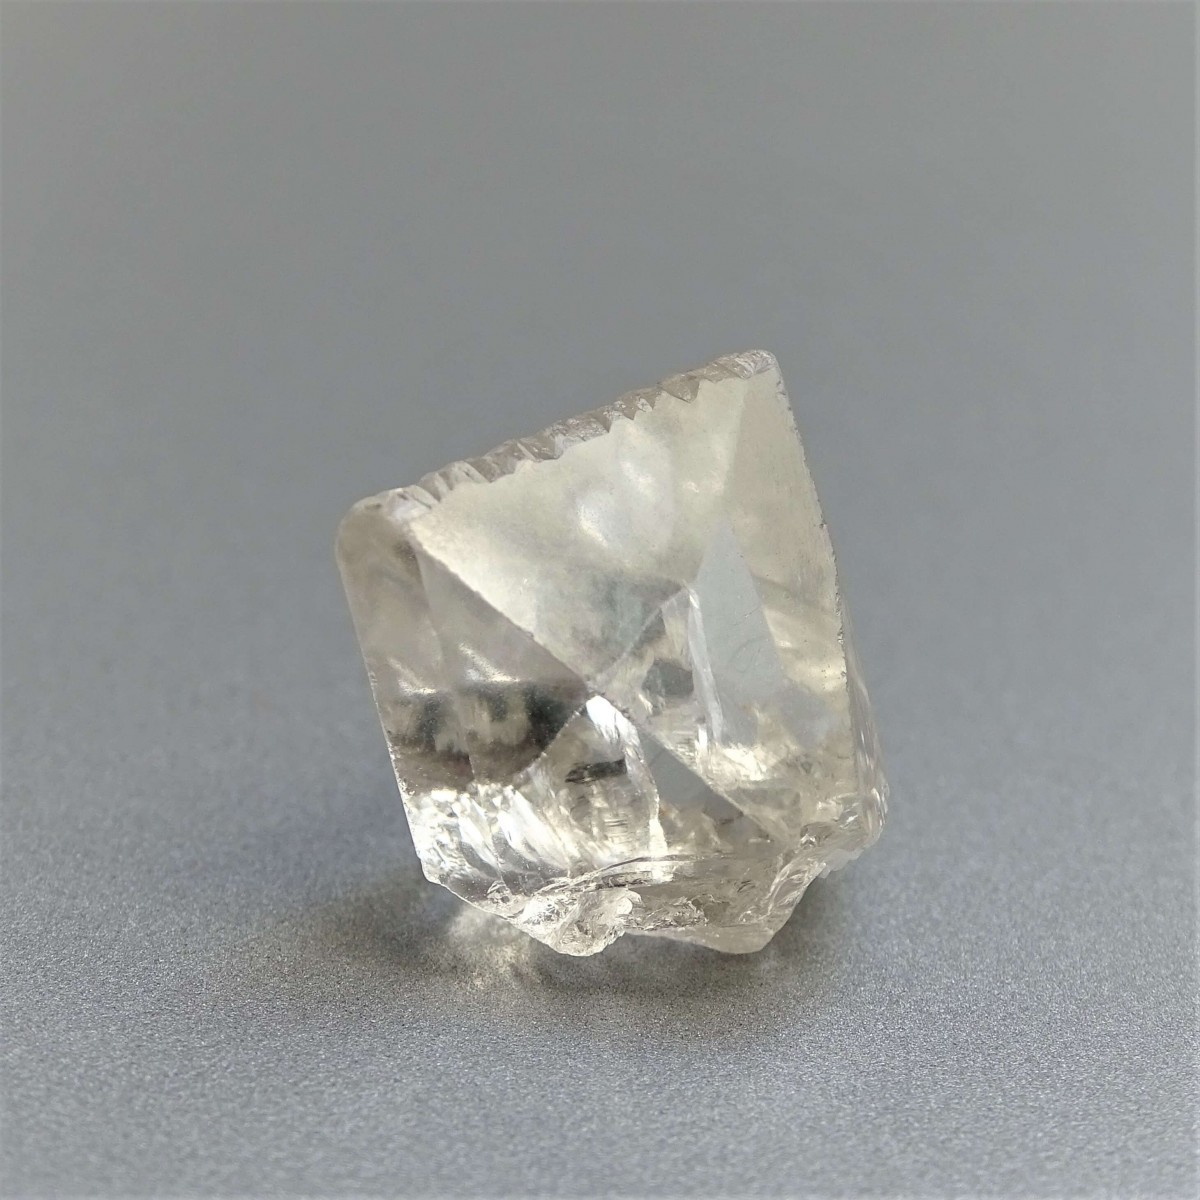 Topas natürlicher Kristall 4g, Pakistan